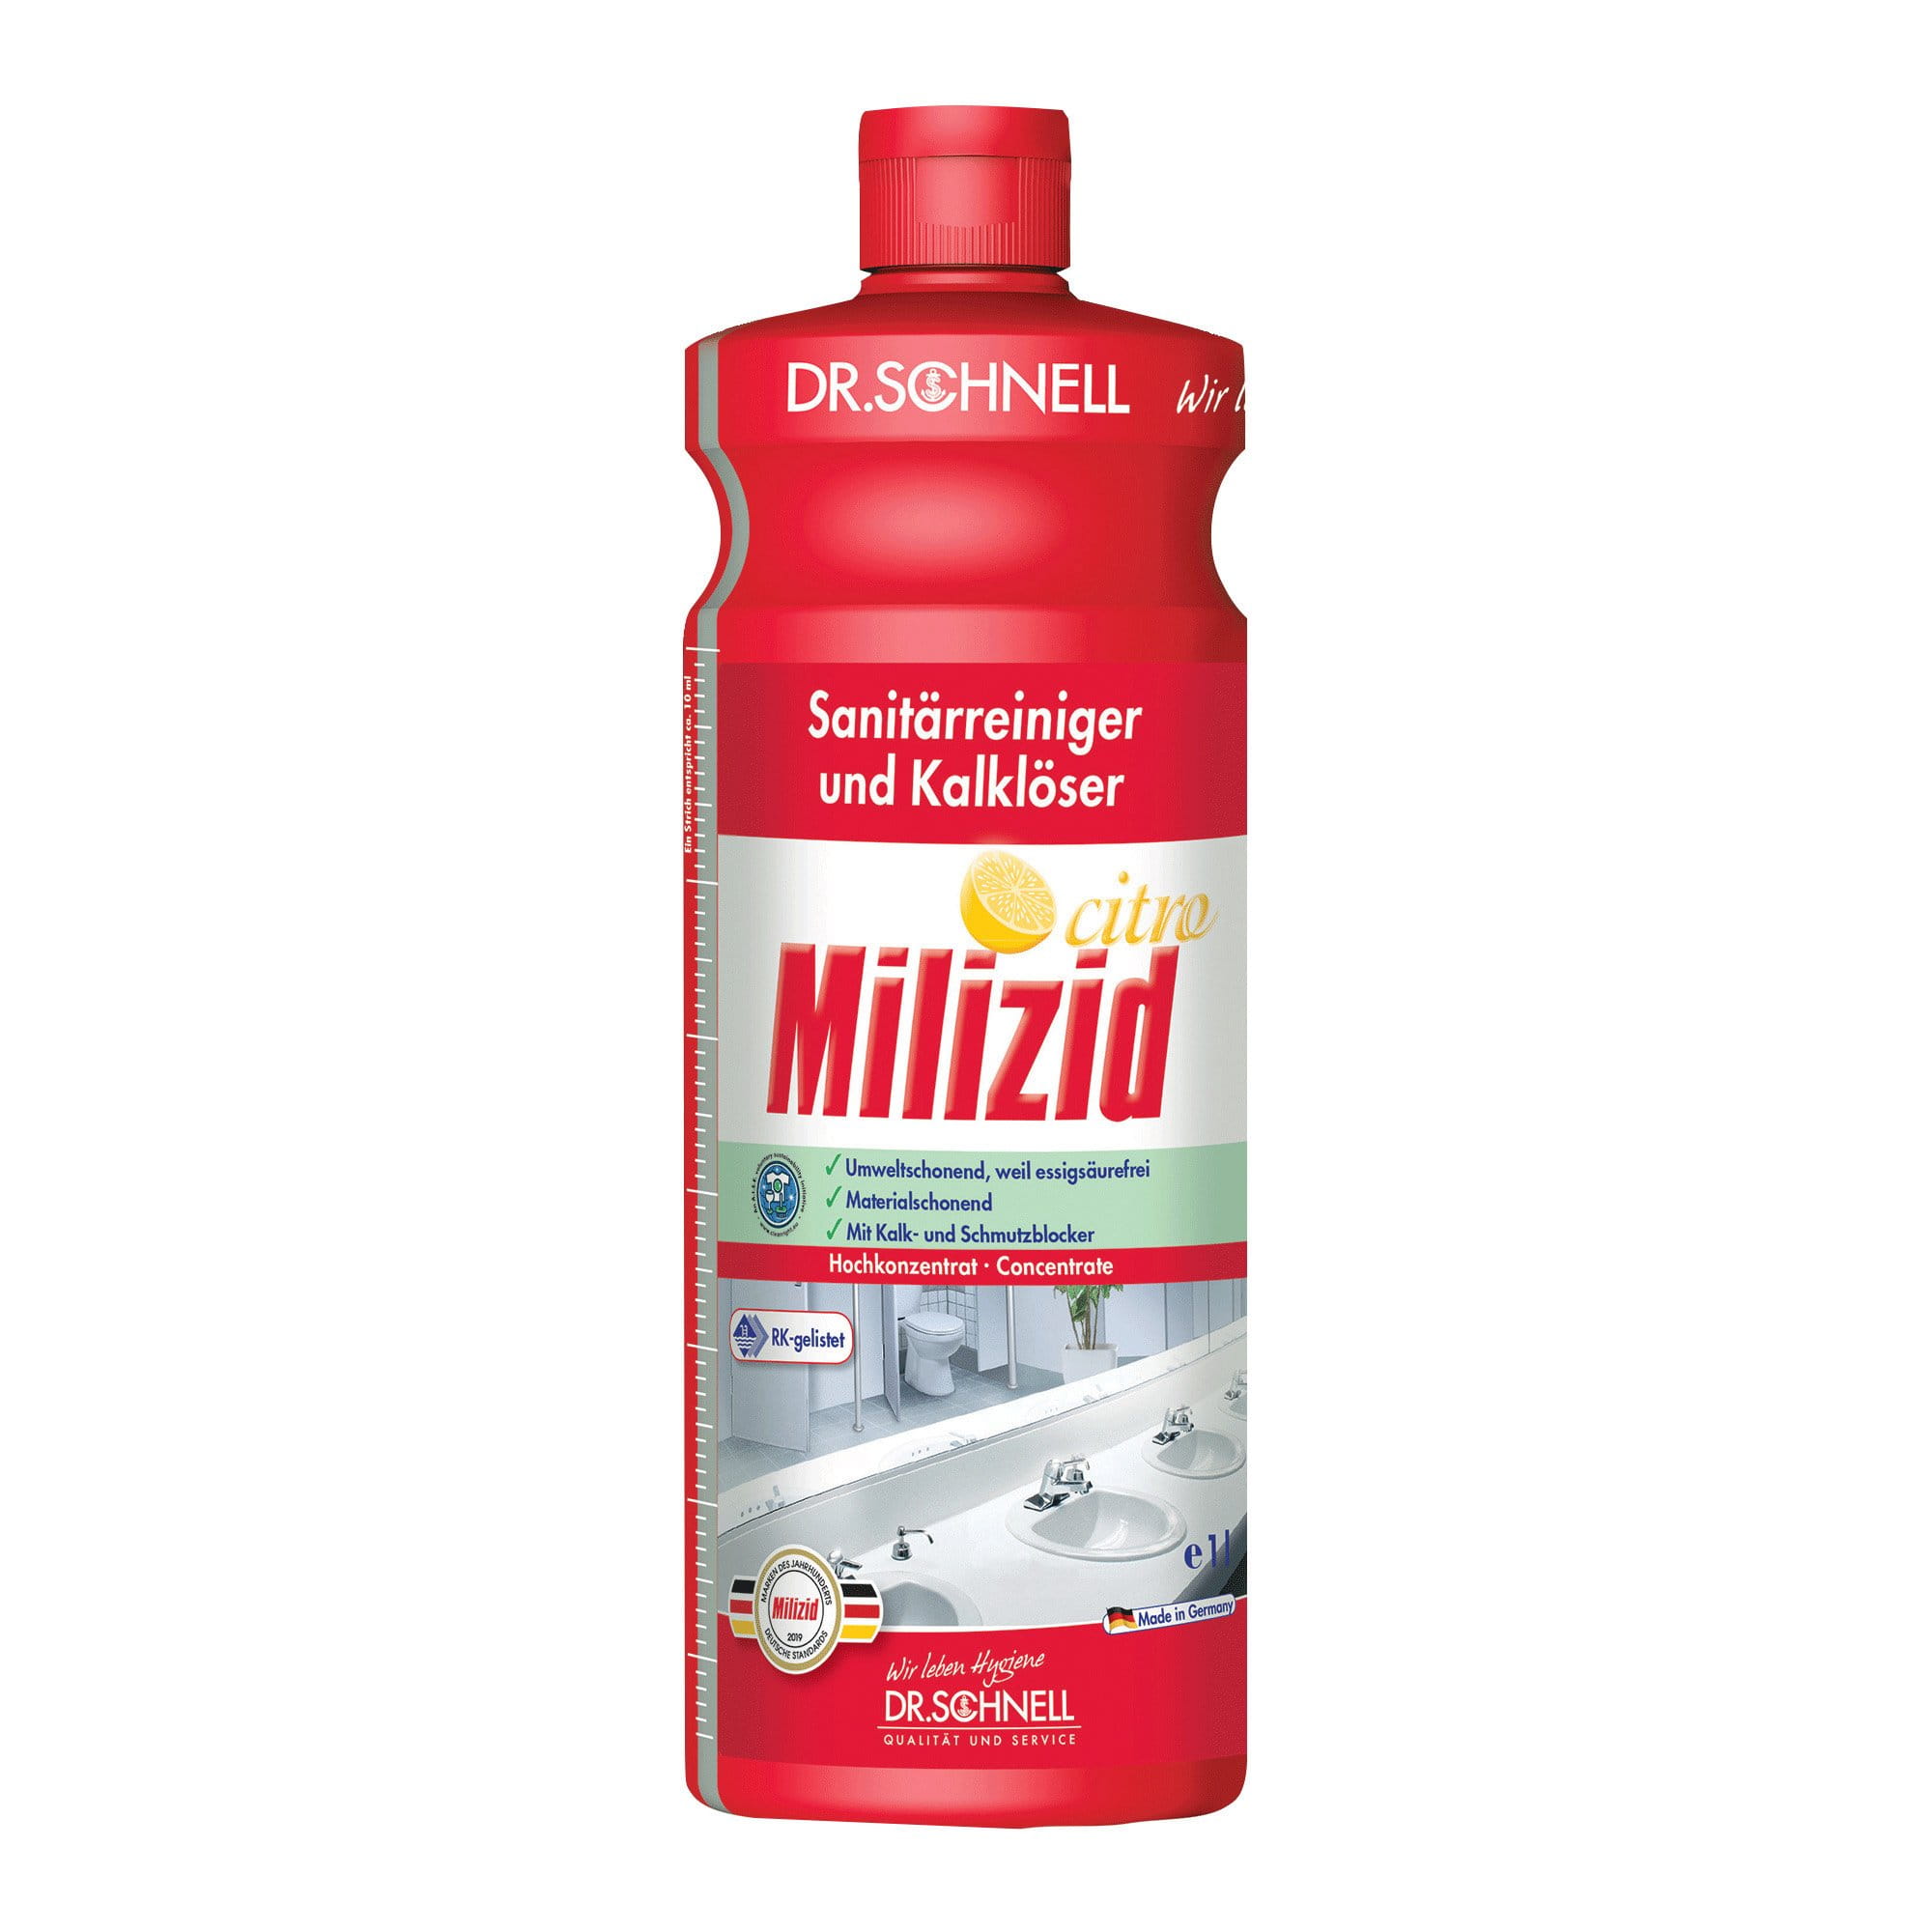 Dr. Schnell Milizid Citro Sanitärreiniger 1 Liter Flasche 00557_1